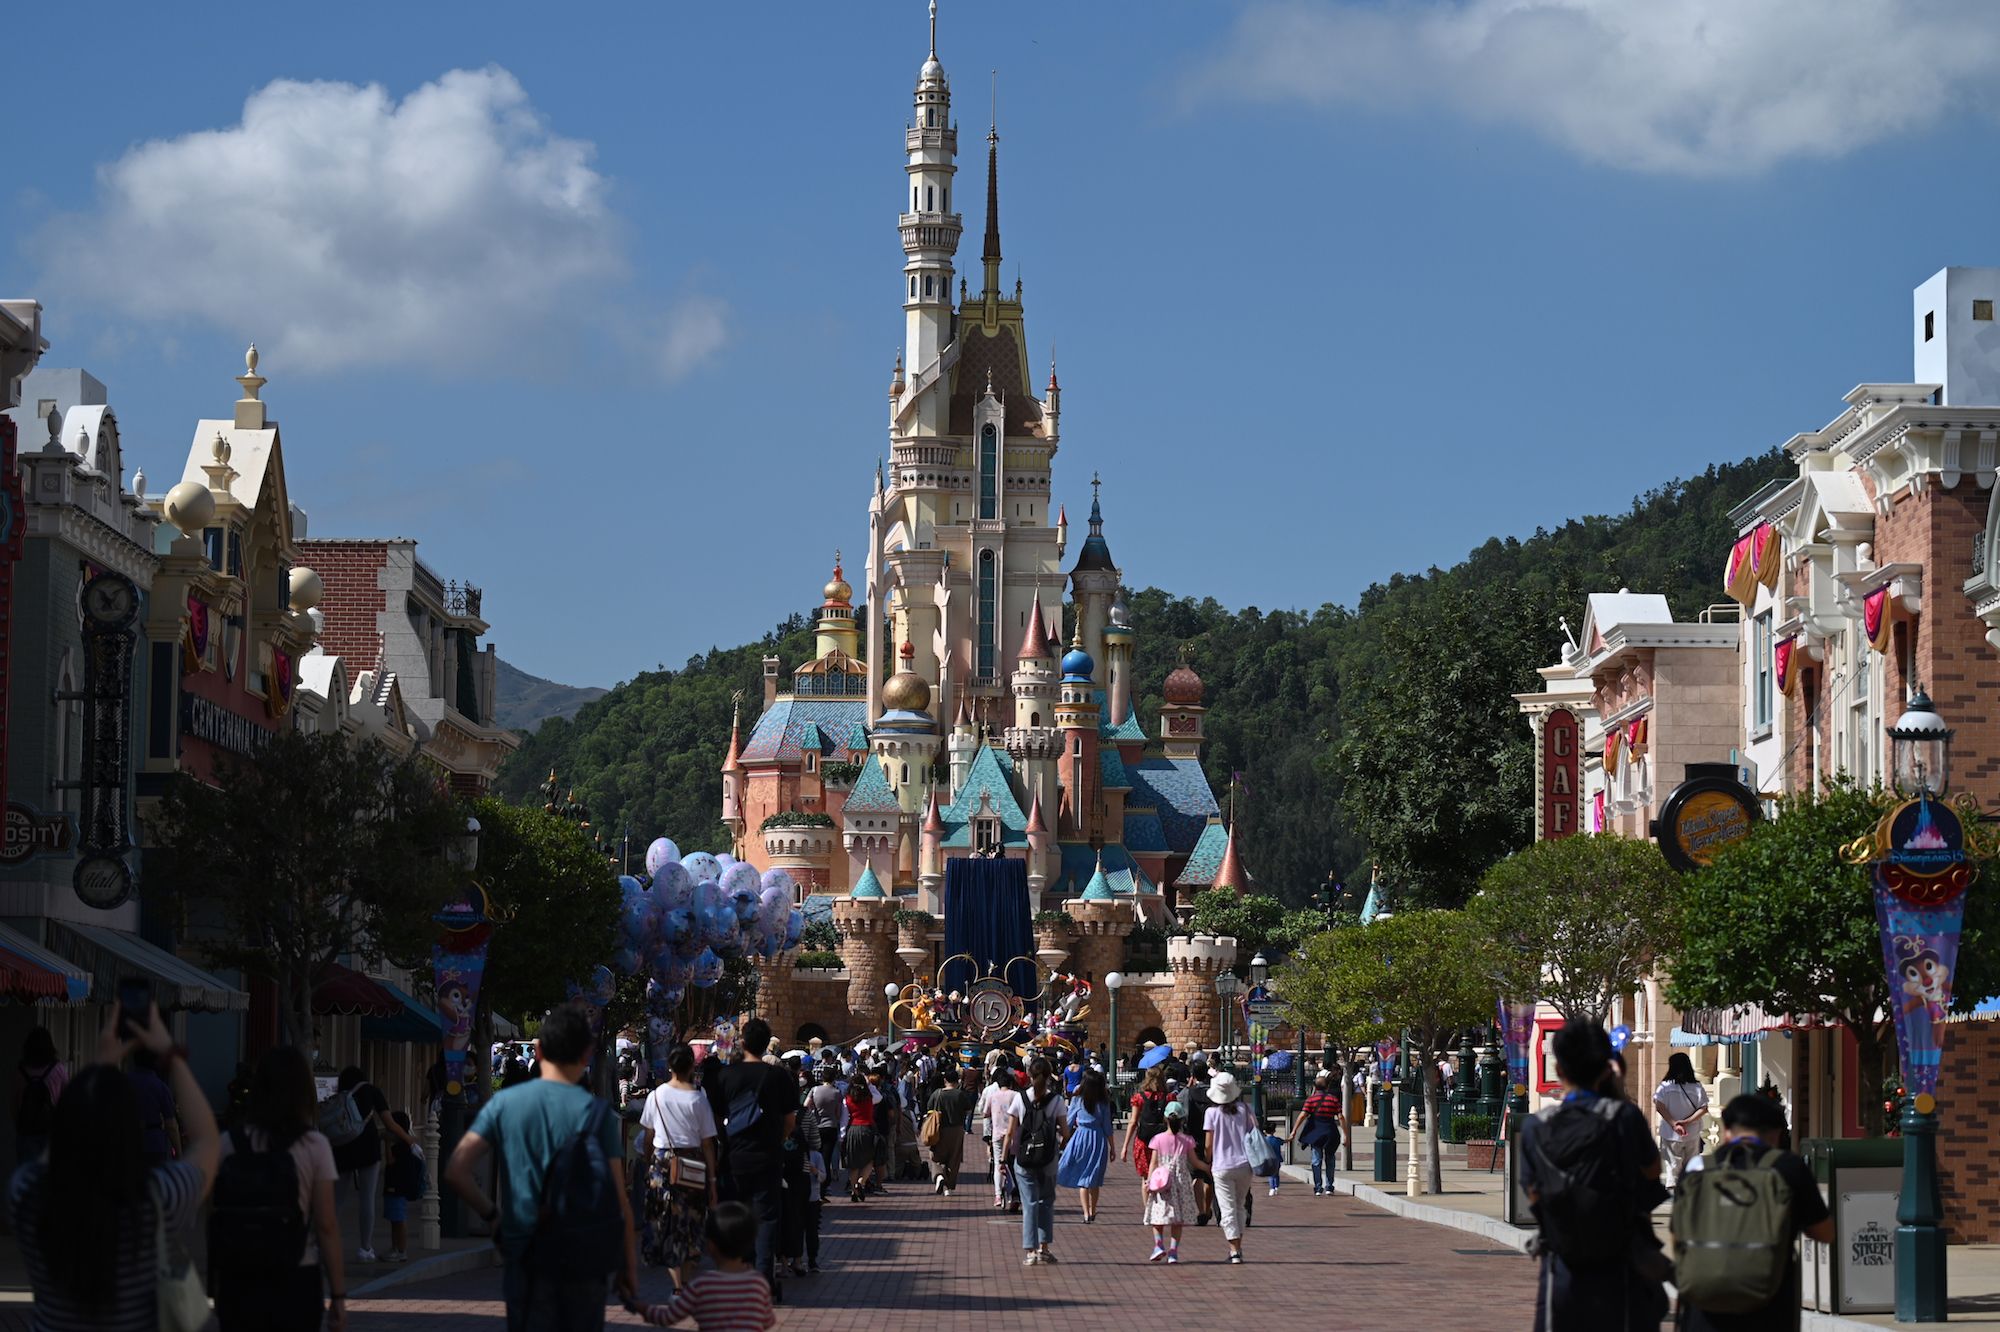 Hong Kong Disneyland sẽ mở cửa trở lại vào ngày 19 tháng 2, đây là cơ hội để bạn quay lại khám phá thế giới lý thú của công viên giải trí này. Tận hưởng không gian an toàn và trải nghiệm các hoạt động đầy sáng tạo và vui nhộn.